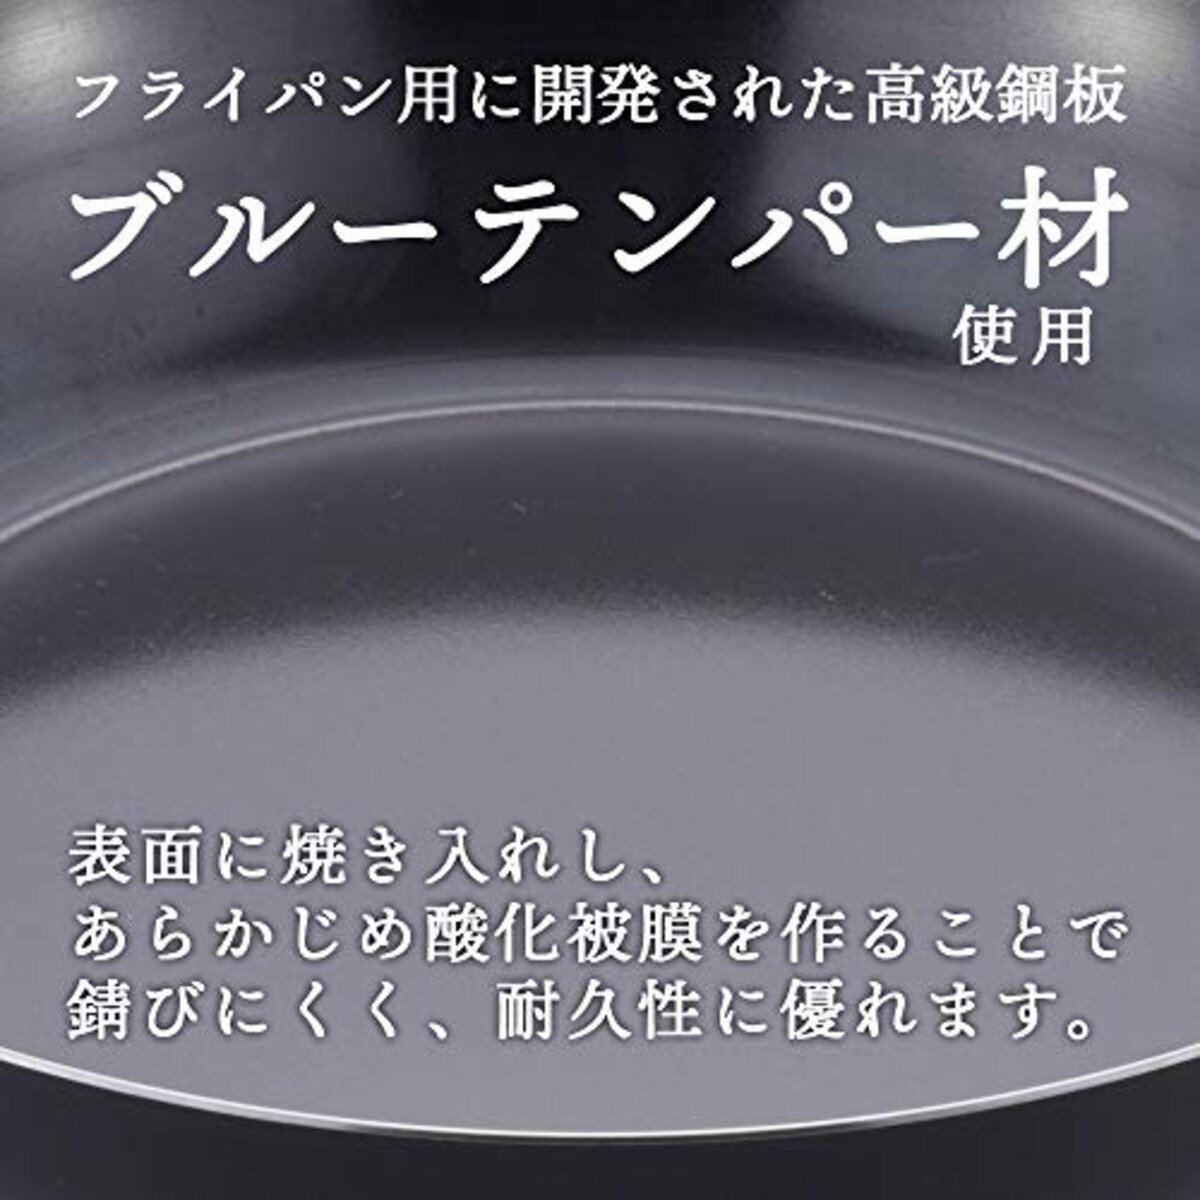  和平フレイズ フライパン 焼き物 炒め物 ステーキ エパスト 26cm 鉄 ブルーテンパー材 日本製 MA-9957画像4 